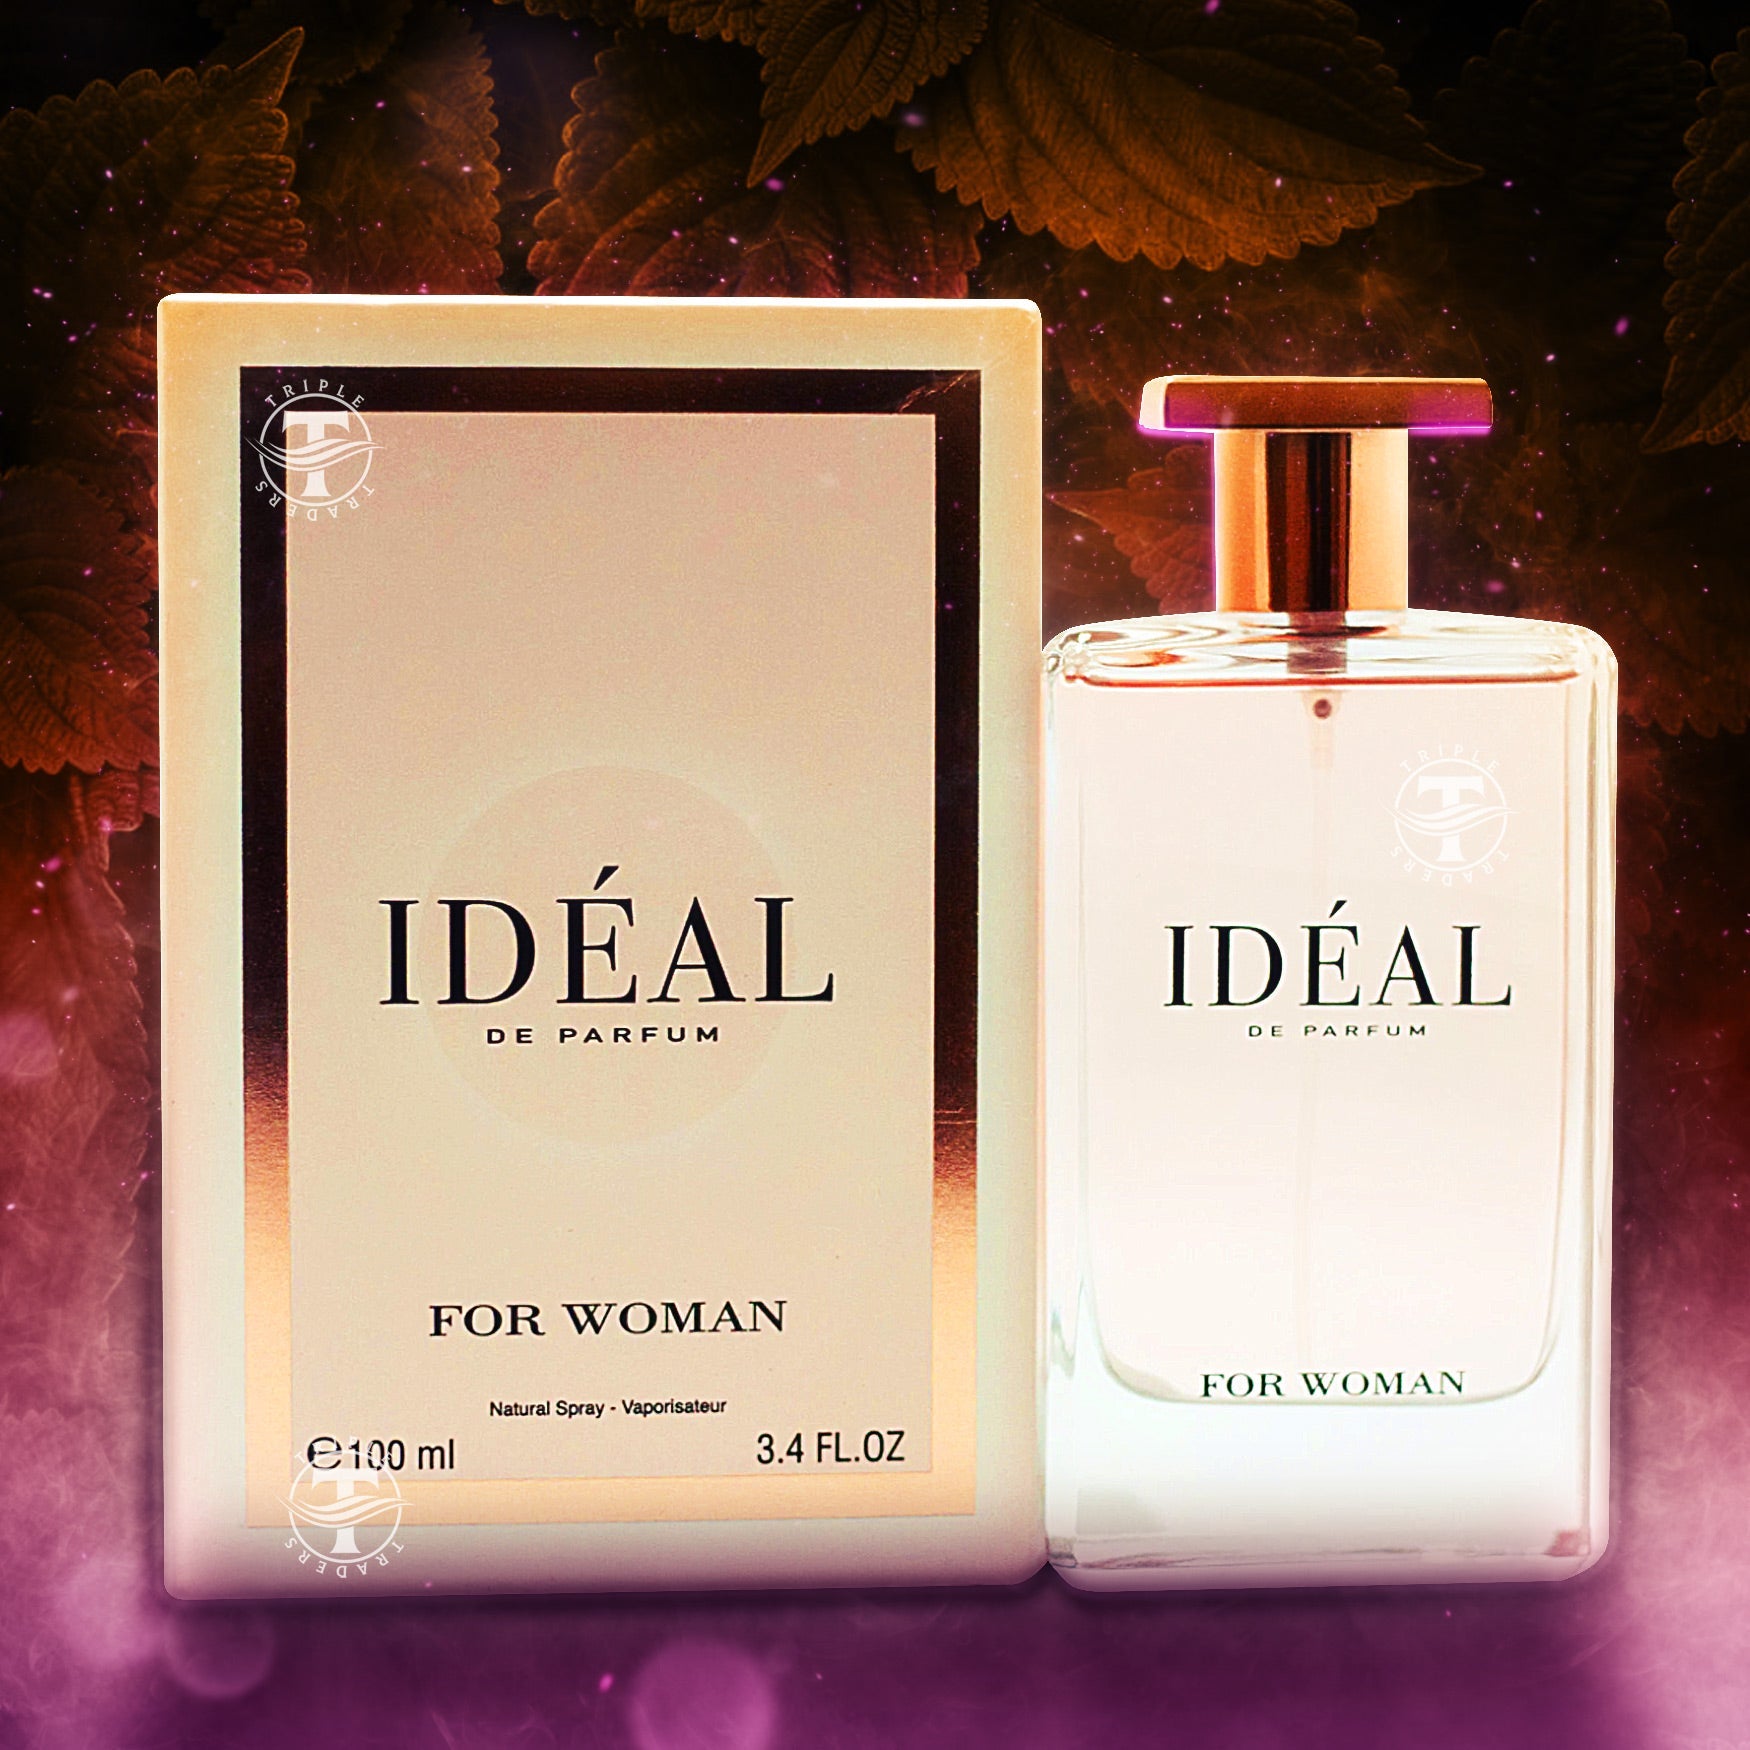 Novoglow Paris Women- Eau de Parfum Spray Perfume, Fragrance for Women- Daywear, Casual Daily Cologne Set with Deluxe Suede Pouch- 34 oz